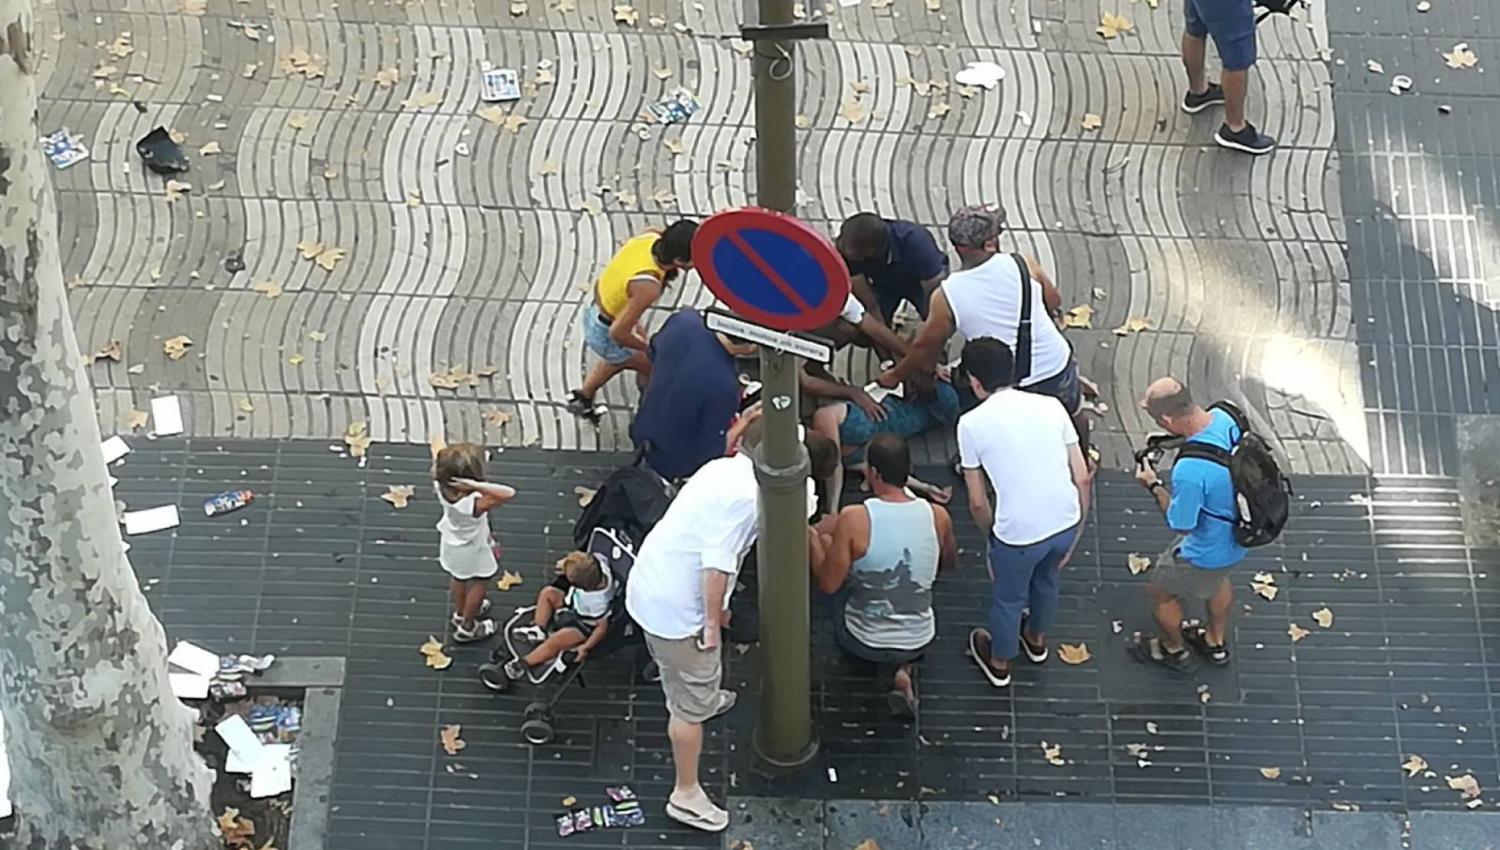 ATENTADO TERRORISTA. Un grupo de personas intenta ayudar a un herido, en Barcelona. 